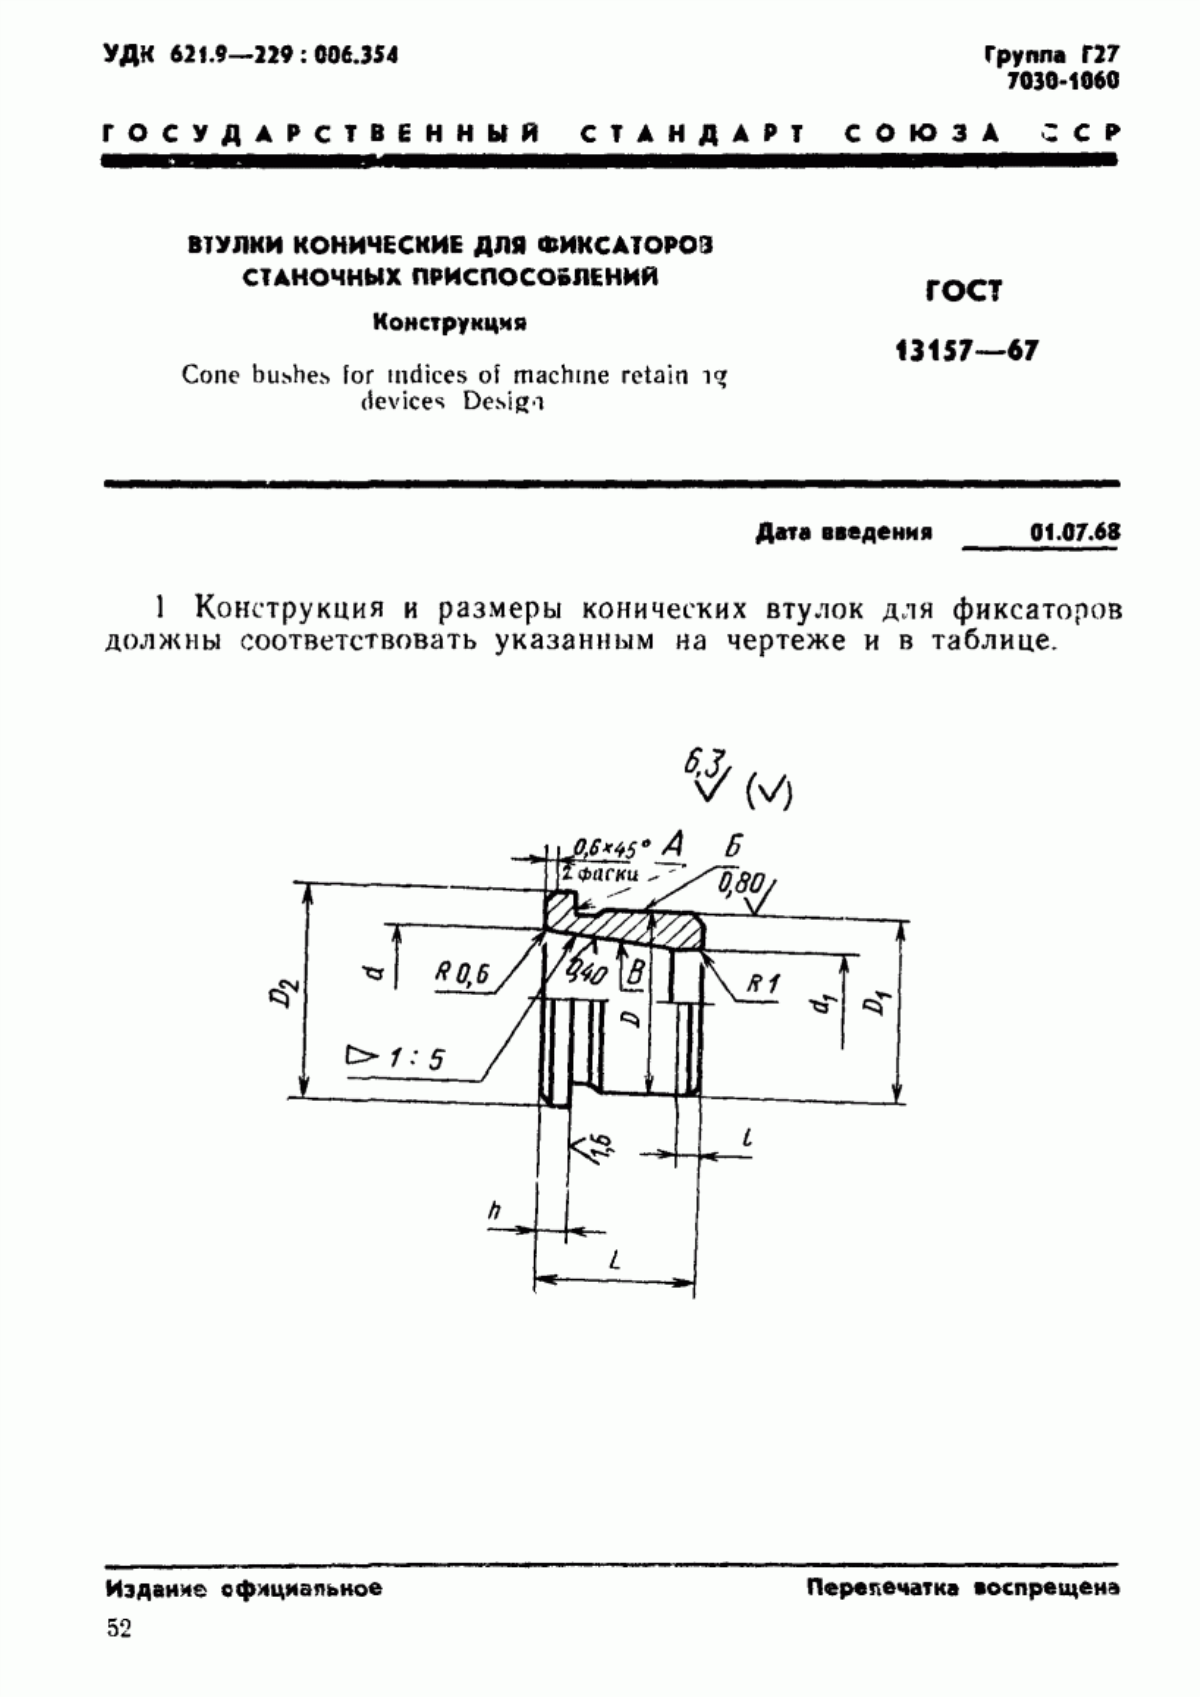 ГОСТ 13157-67 Втулки конические для фиксаторов станочных приспособлений. Конструкция